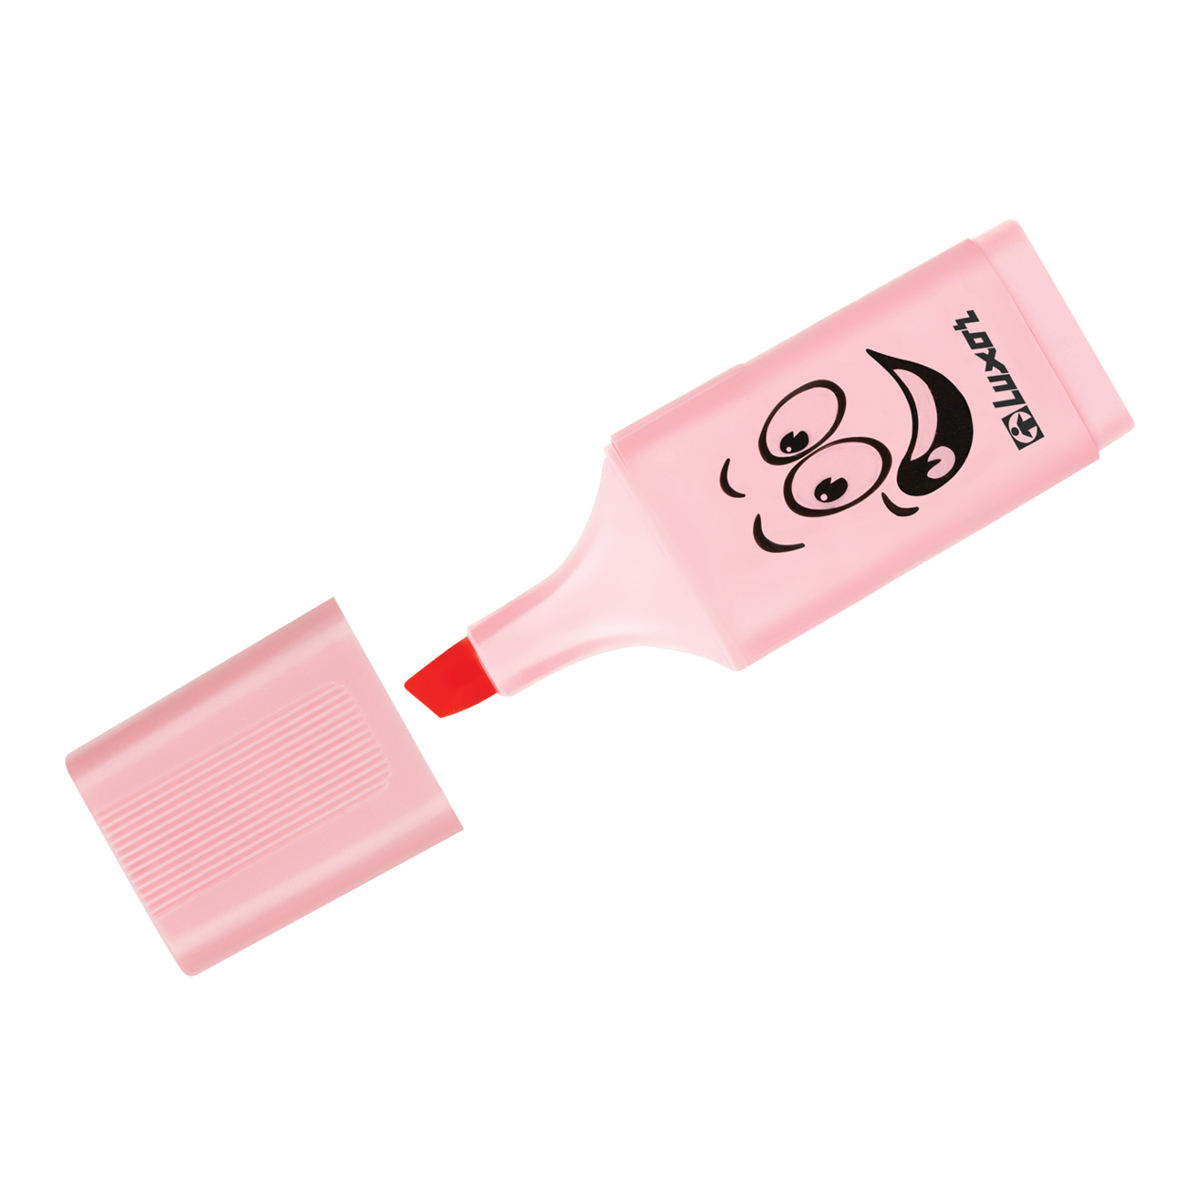 Текстовыделитель Luxor Eyeliter Pastel пастельный розовый, 1-5мм